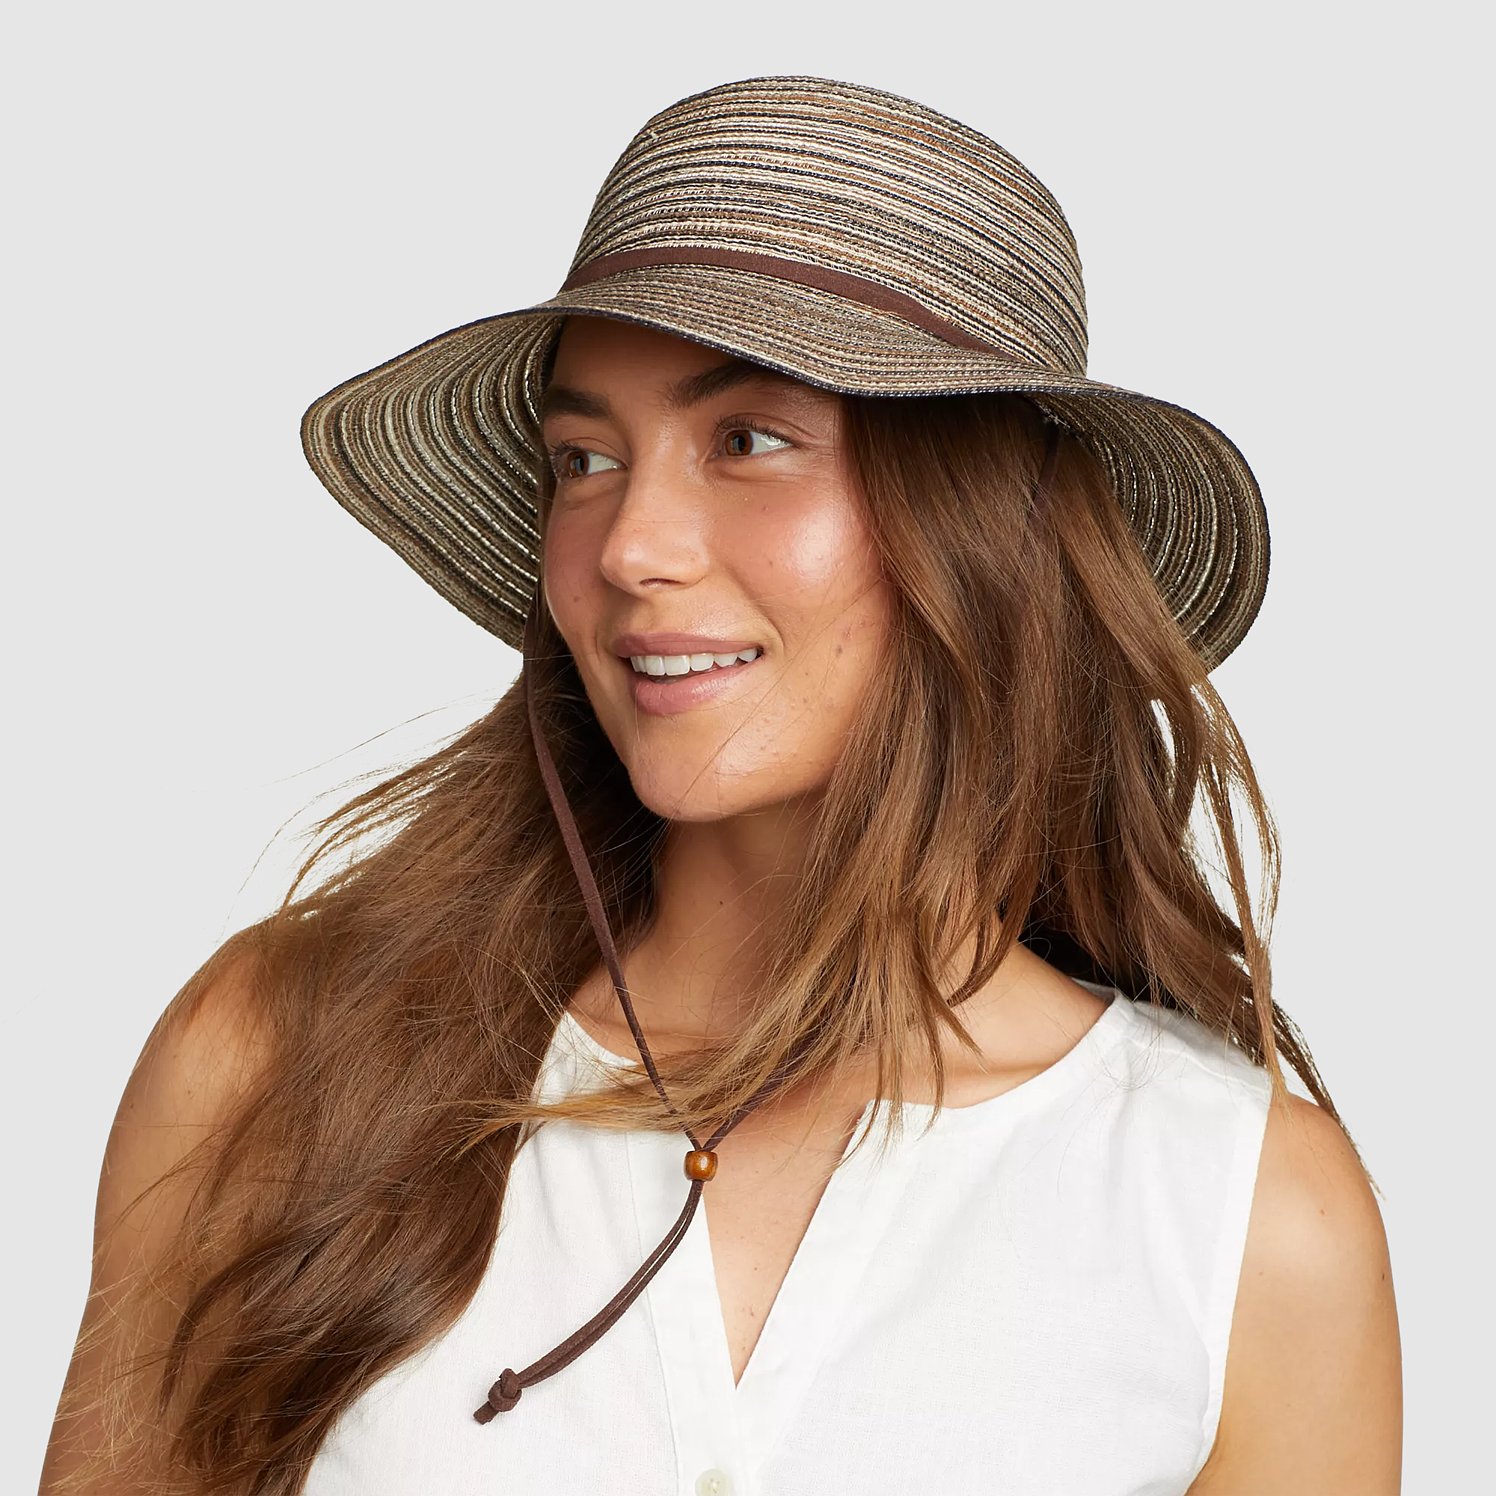 Eddie Bauer Women's Packable Straw Hat - Wide Brim - Brown - Size L/XL